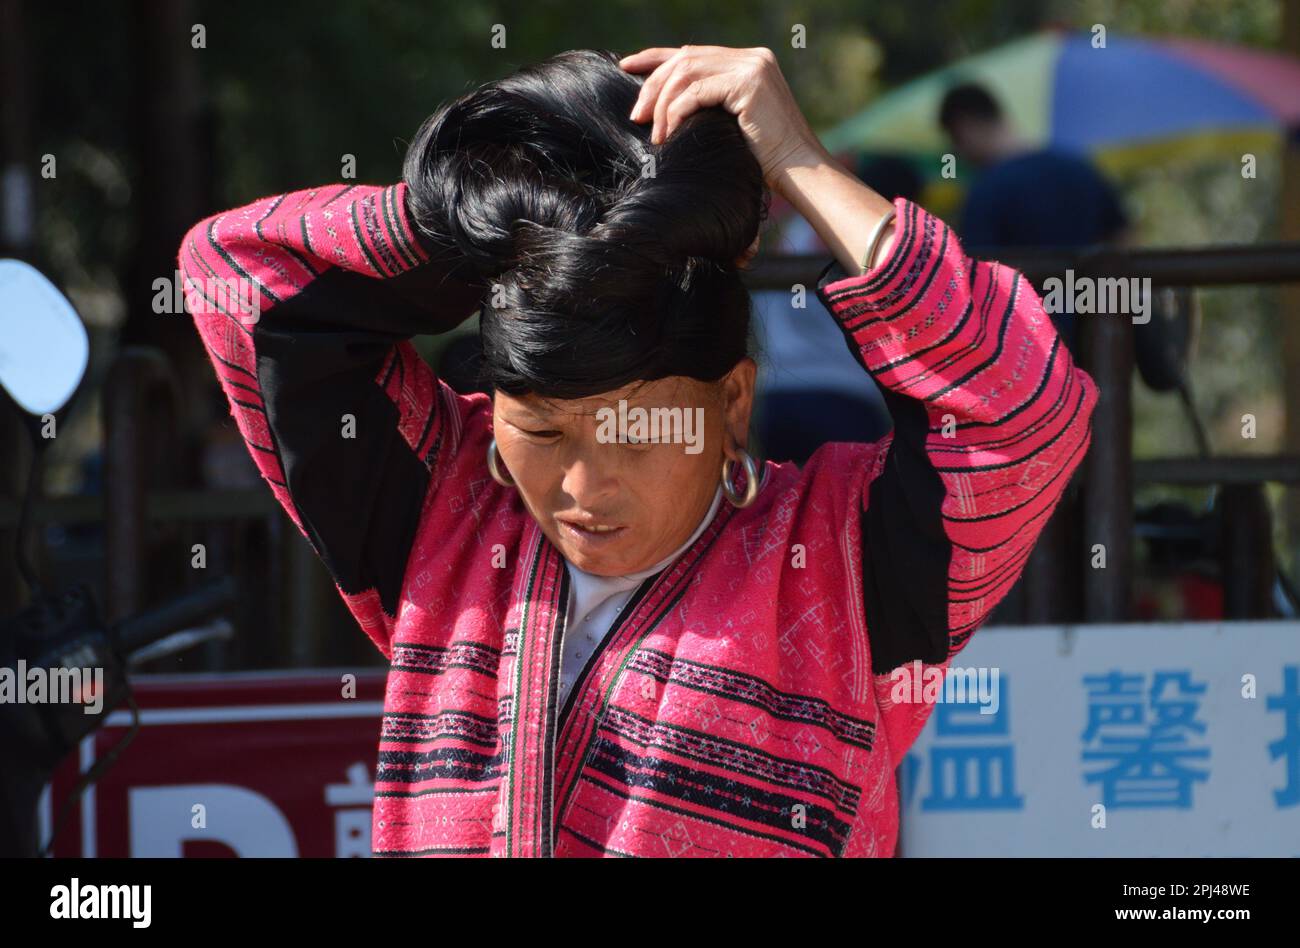 République populaire de Chine, province de Guangxi, Dazhai: Dans ce village, les femmes Yao ont laissé leurs cheveux pousser à toute sa longueur, mais les garder enroulés vers le haut dur Banque D'Images